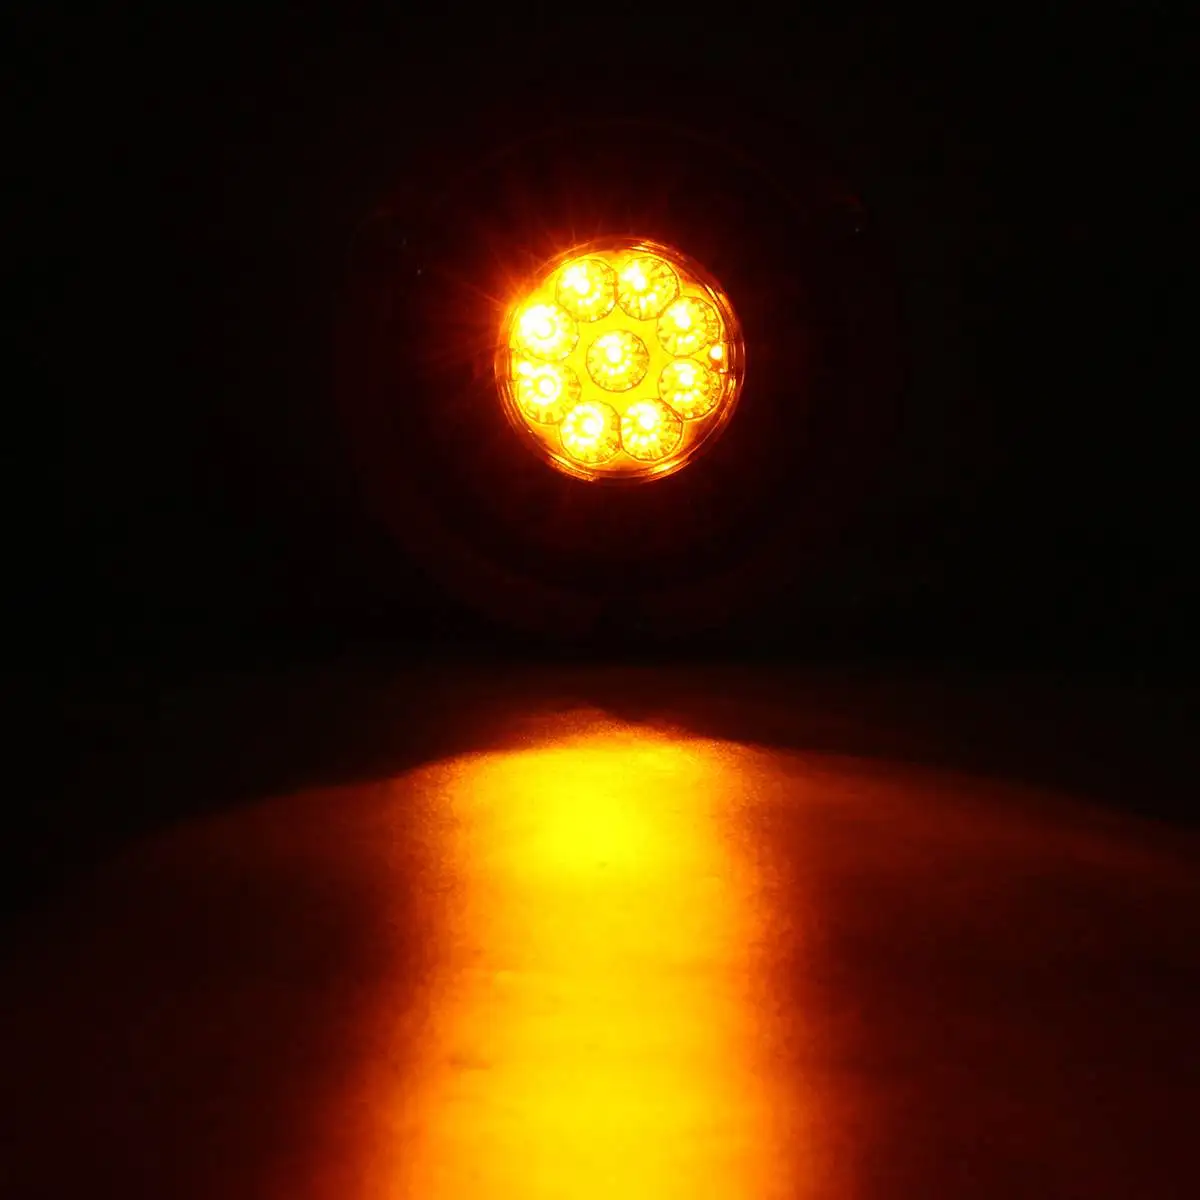 Комплект из 2 предметов, 19 светодиодный футболка с принтом "автомобиль" светодиодный задний светильник s стоп-сигнал светильник для грузового прицепа транспортных средств 12V 24V боковая лампа